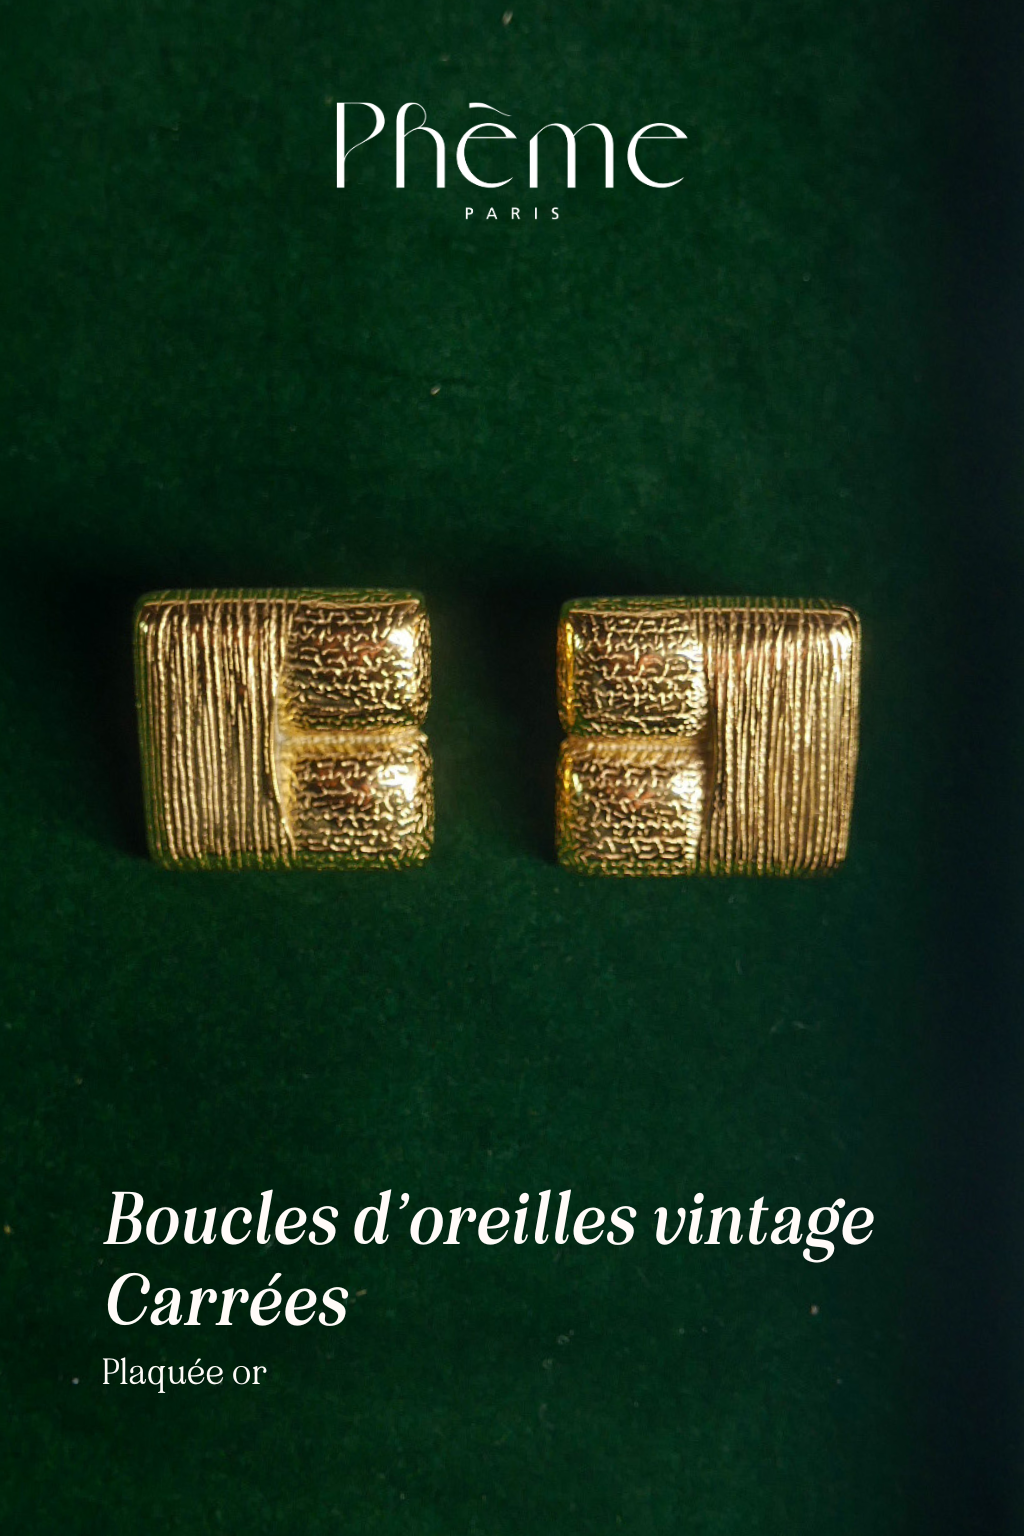 Boucles d'oreilles vintage carrées - plaqué or